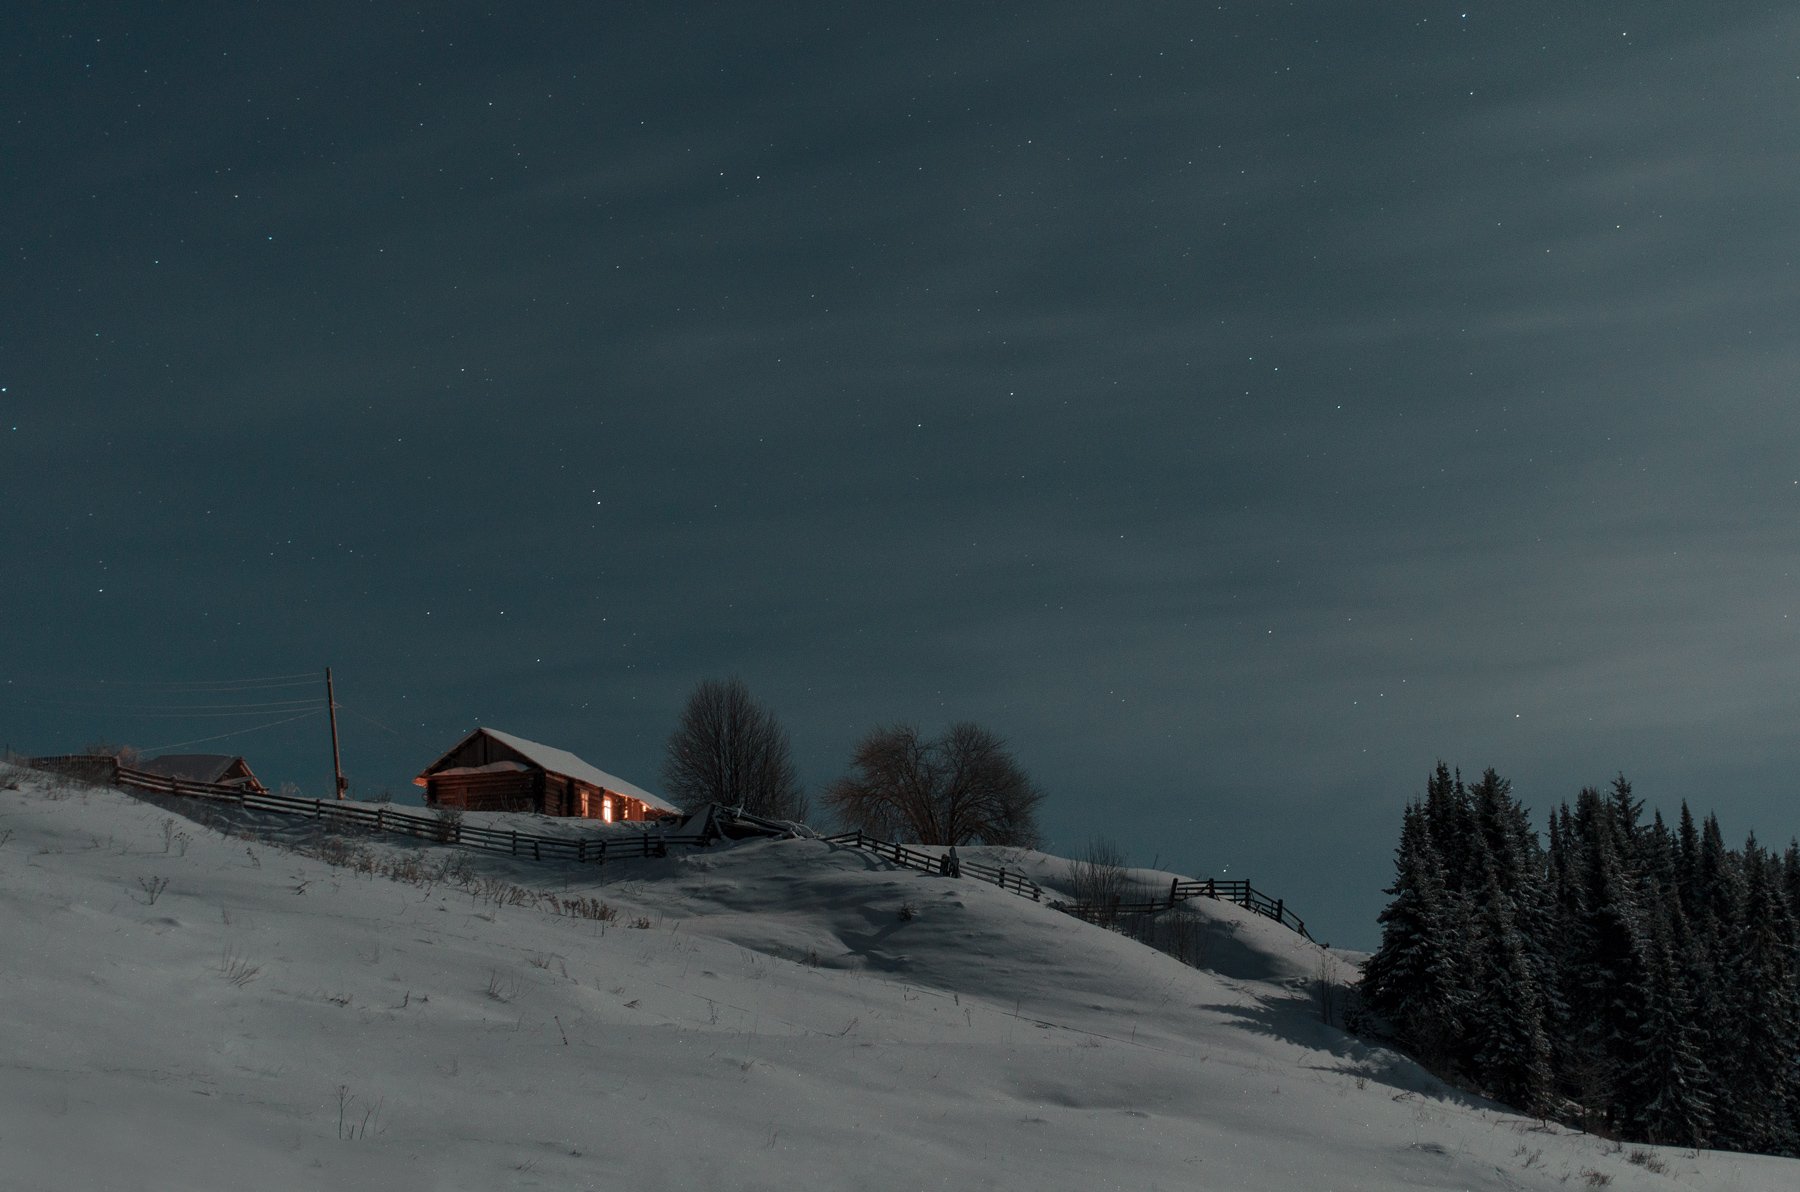 вечер, деревня, деревья, забор, звёзды, лес, лунный свет, облака, окно, снег, холм, Сергей